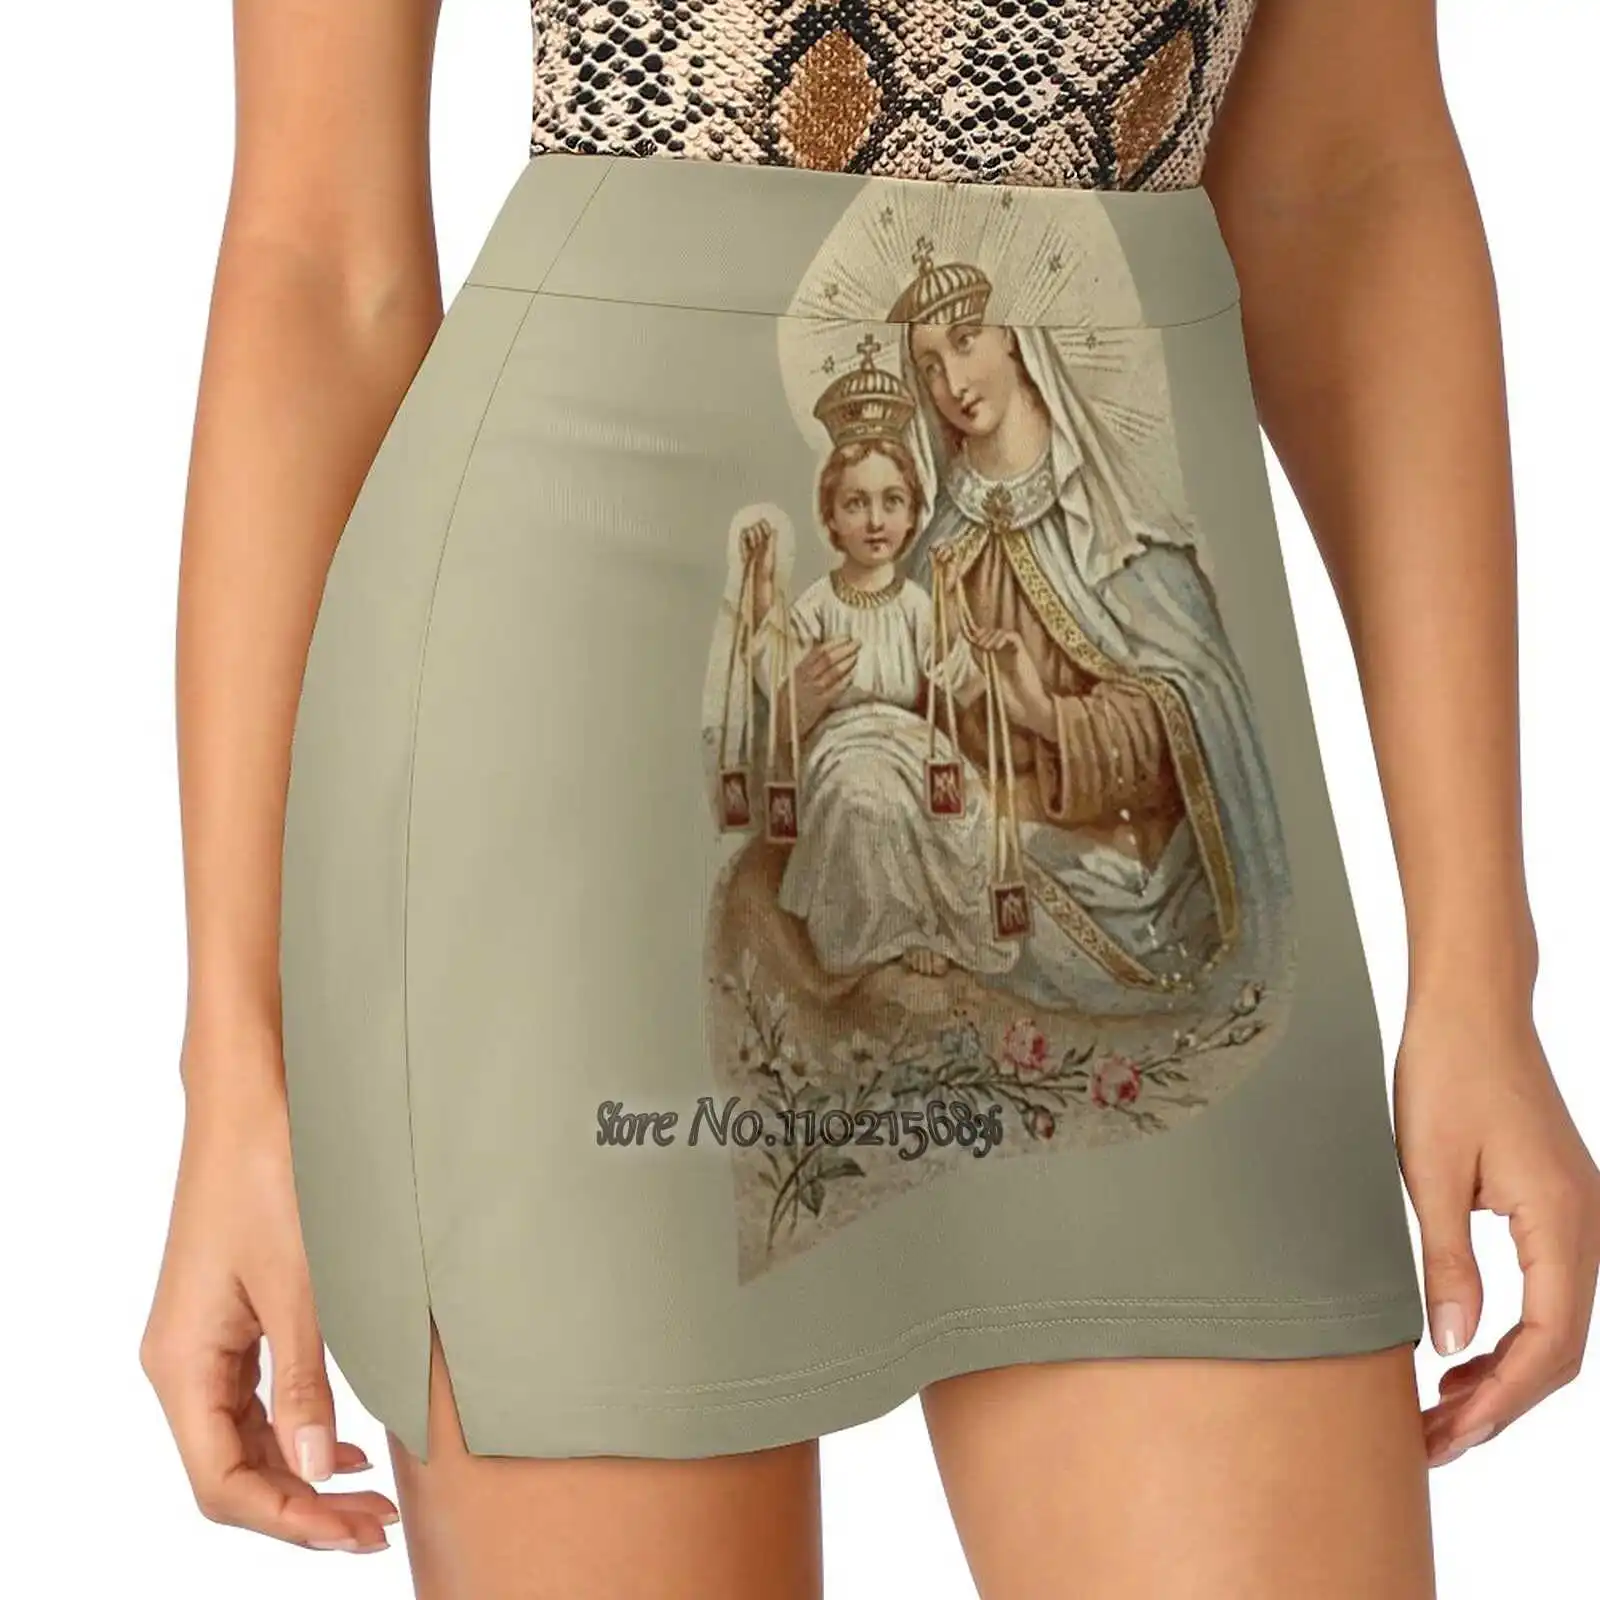 

Женская Спортивная юбка Our Lady Of Mount Carmel, короткая юбка с принтом для занятий теннисом и фитнесом, крепление для нашей леди